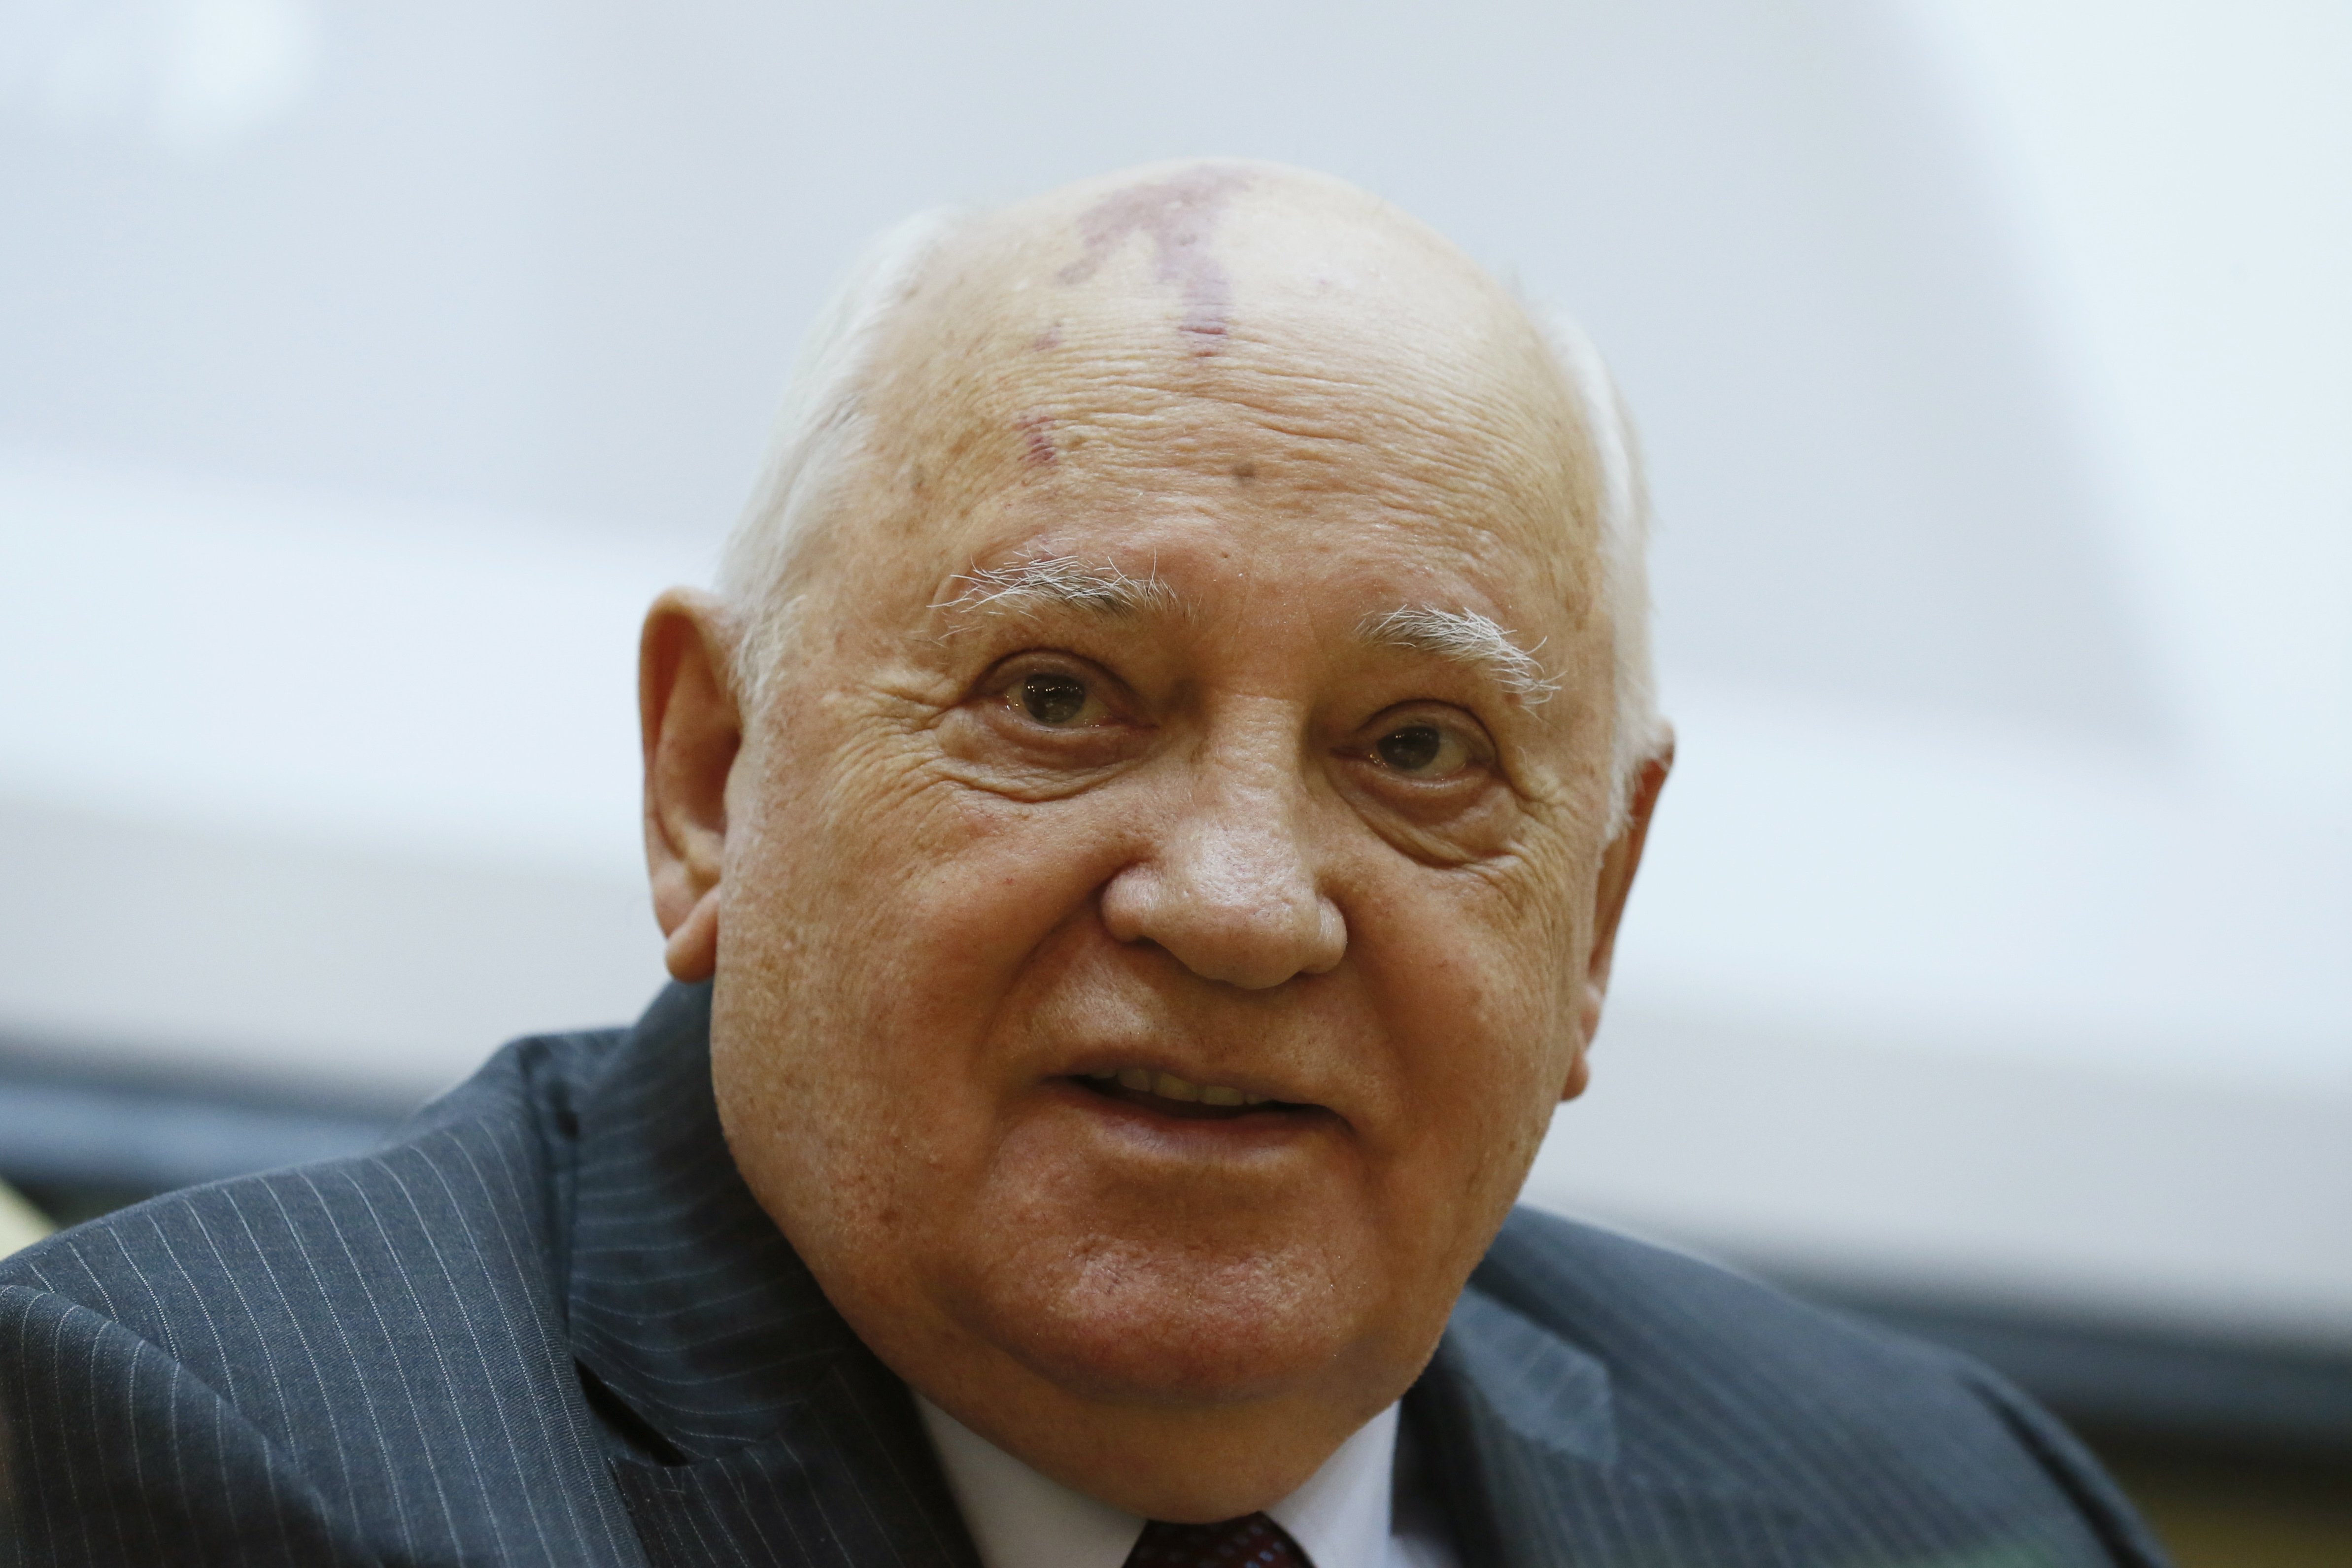 Què en pensava Mikhaïl Gorbatxov de la guerra a Ucraïna?